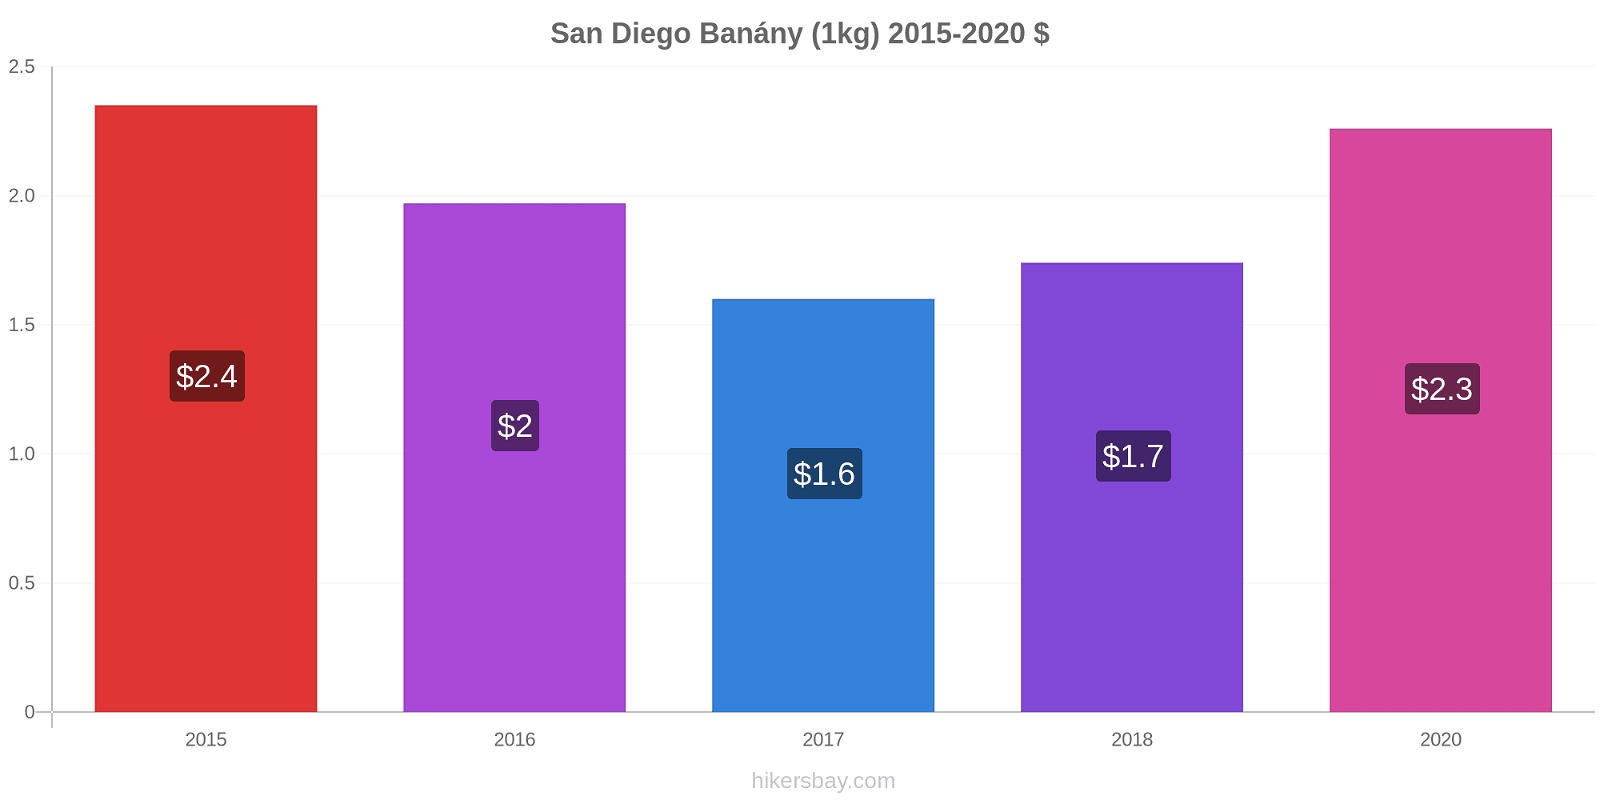 San Diego změny cen Banány (1kg) hikersbay.com